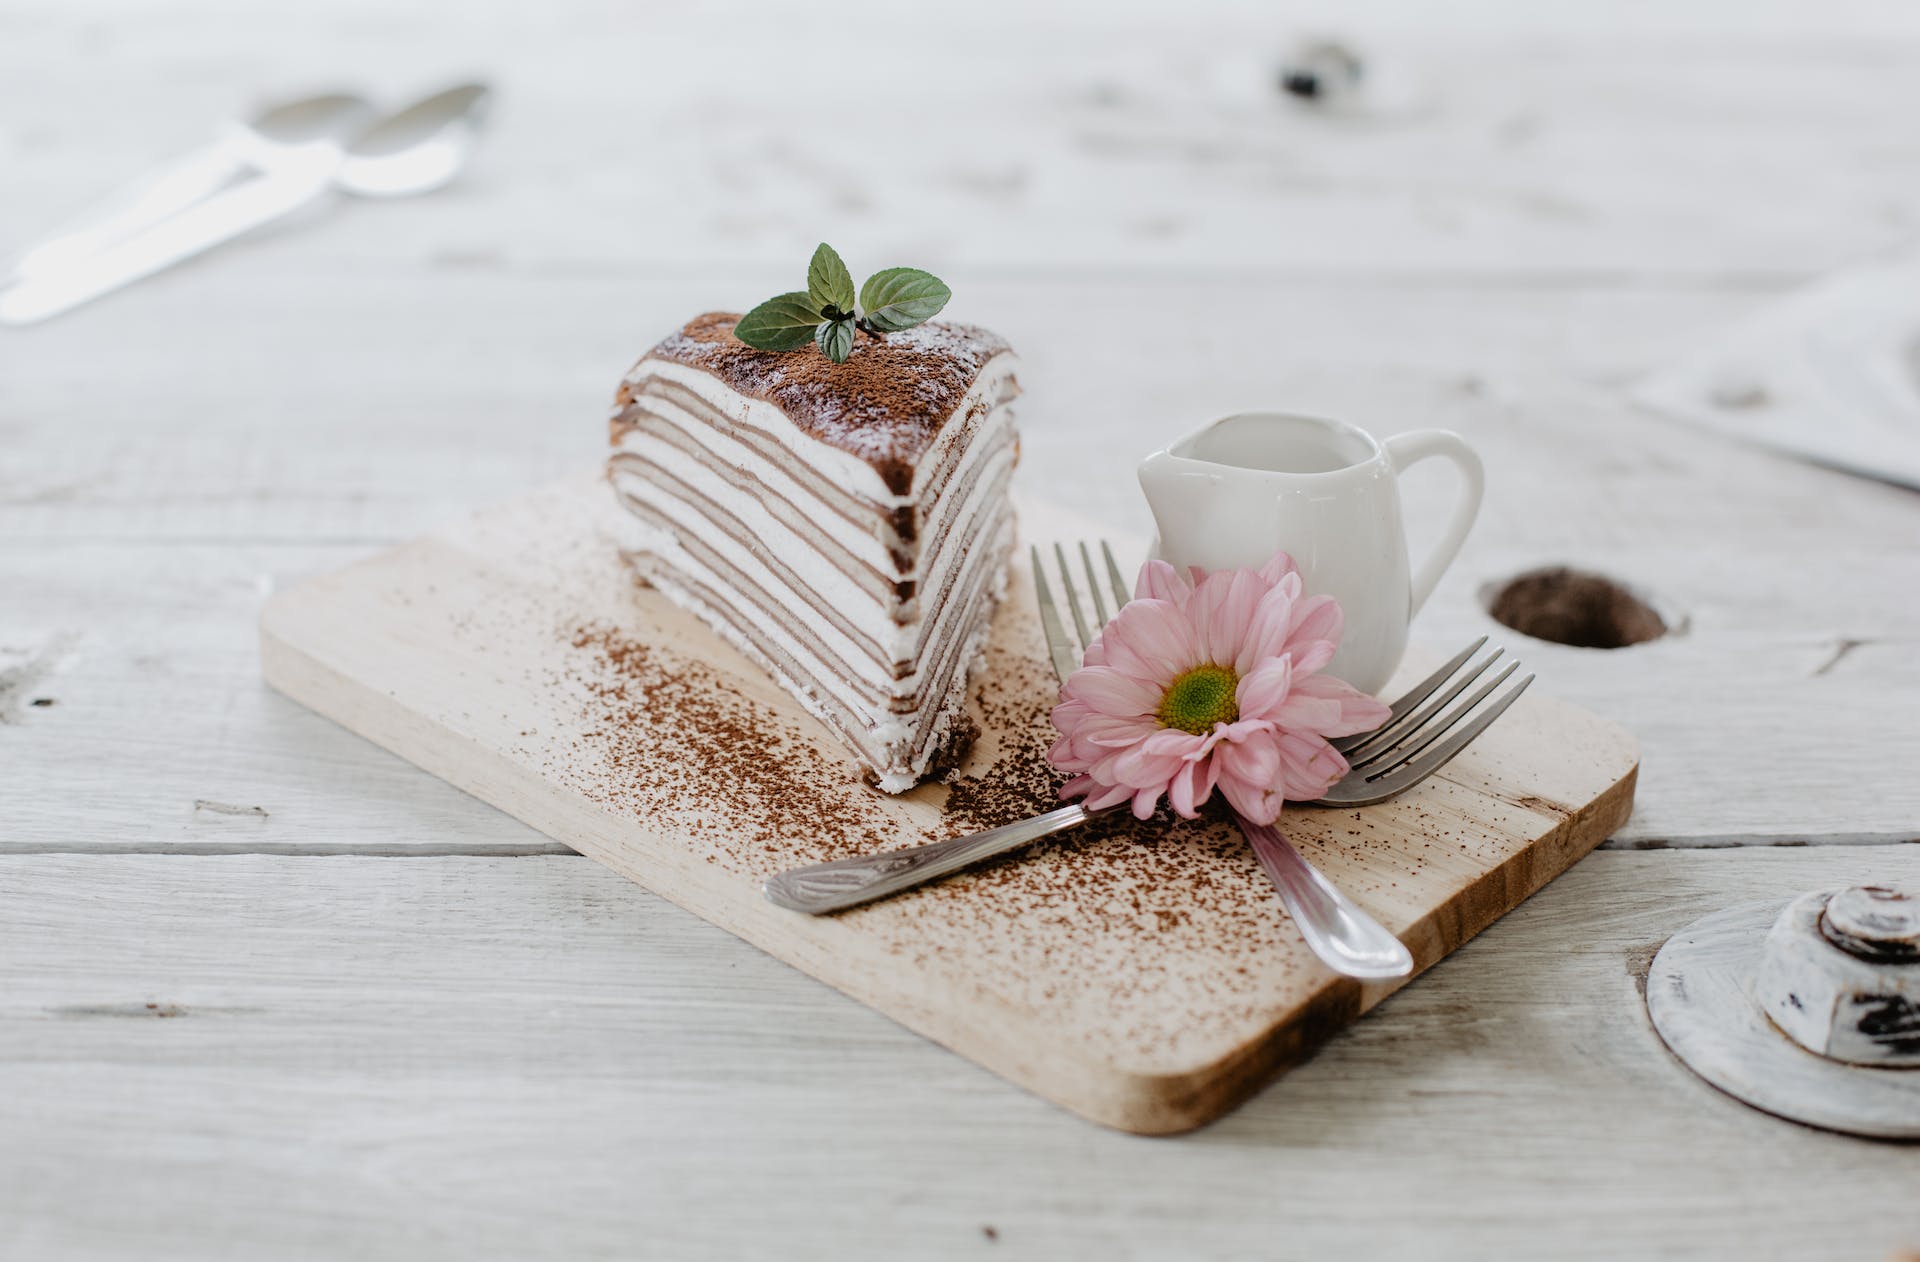 Une tranche de gâteau sur la table | Source : Pexels